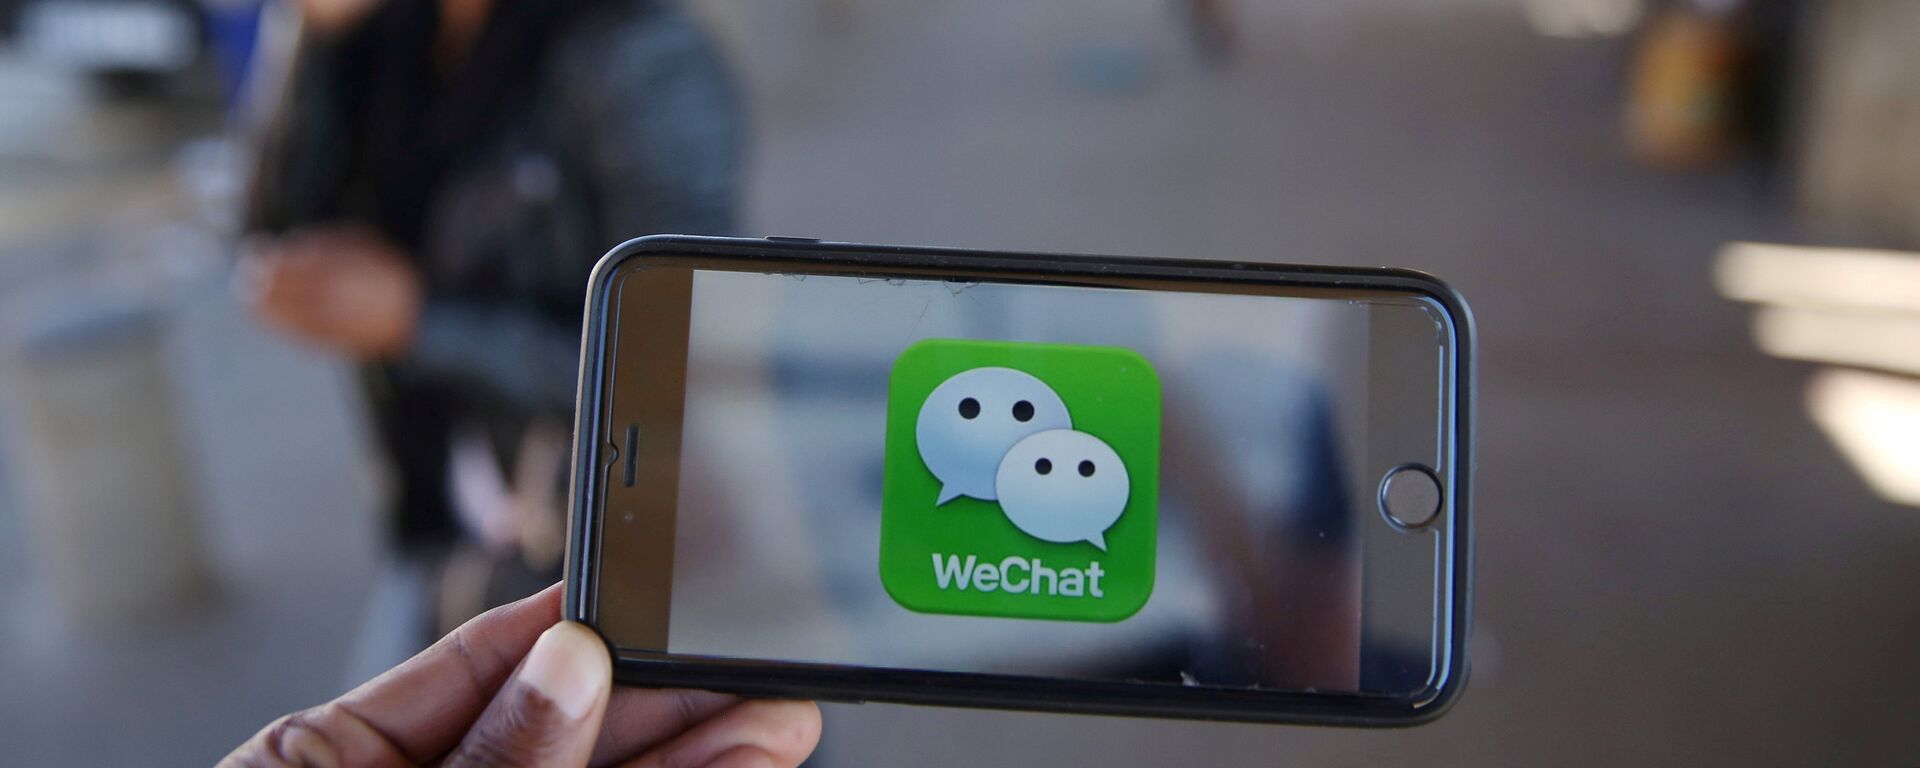 Un logotipo de WeChat se muestra en un teléfono móvil - Sputnik Mundo, 1920, 26.04.2021